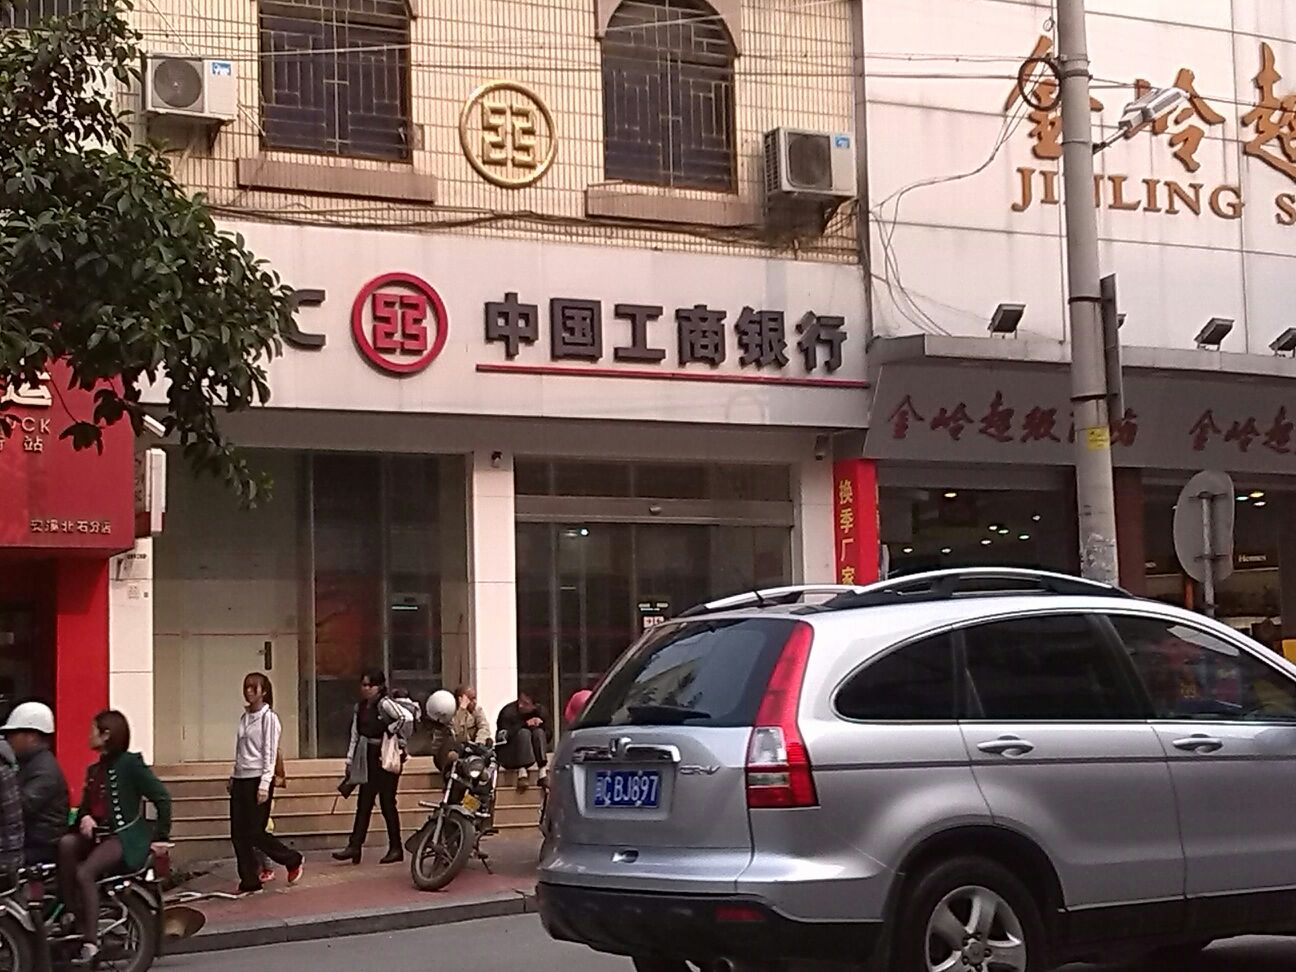 中國工商銀行24小時自助銀行(河濱南路店)